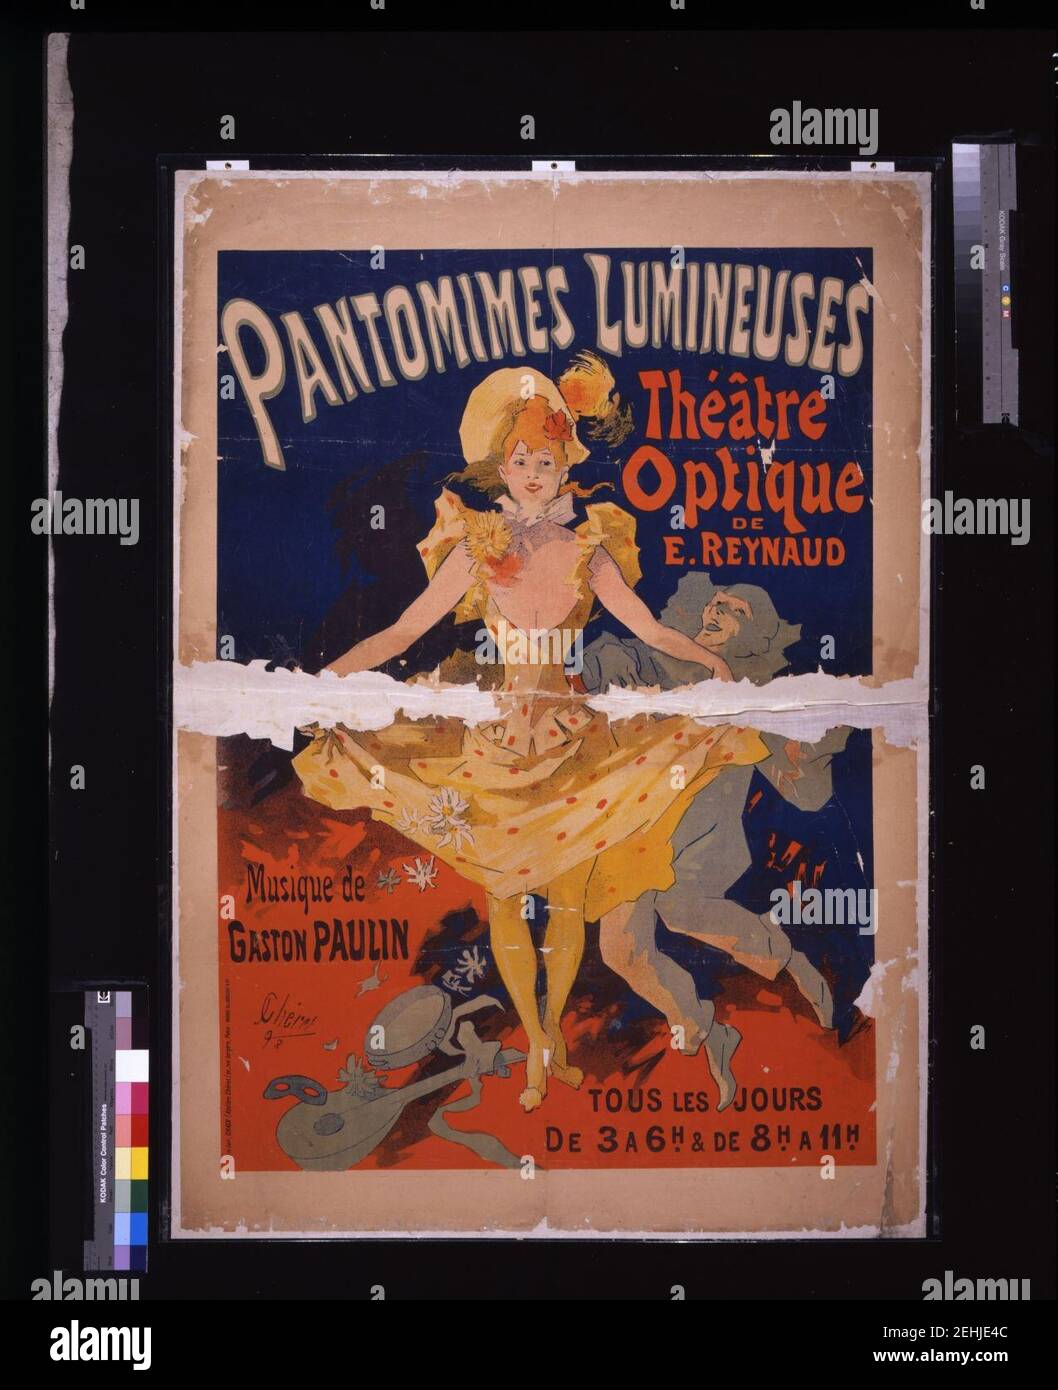 Pantomimes lumineuses- Théâtre optique de E. Reynaud, musique de Gaston Paulin - - J. Chéret, '92. Stock Photo